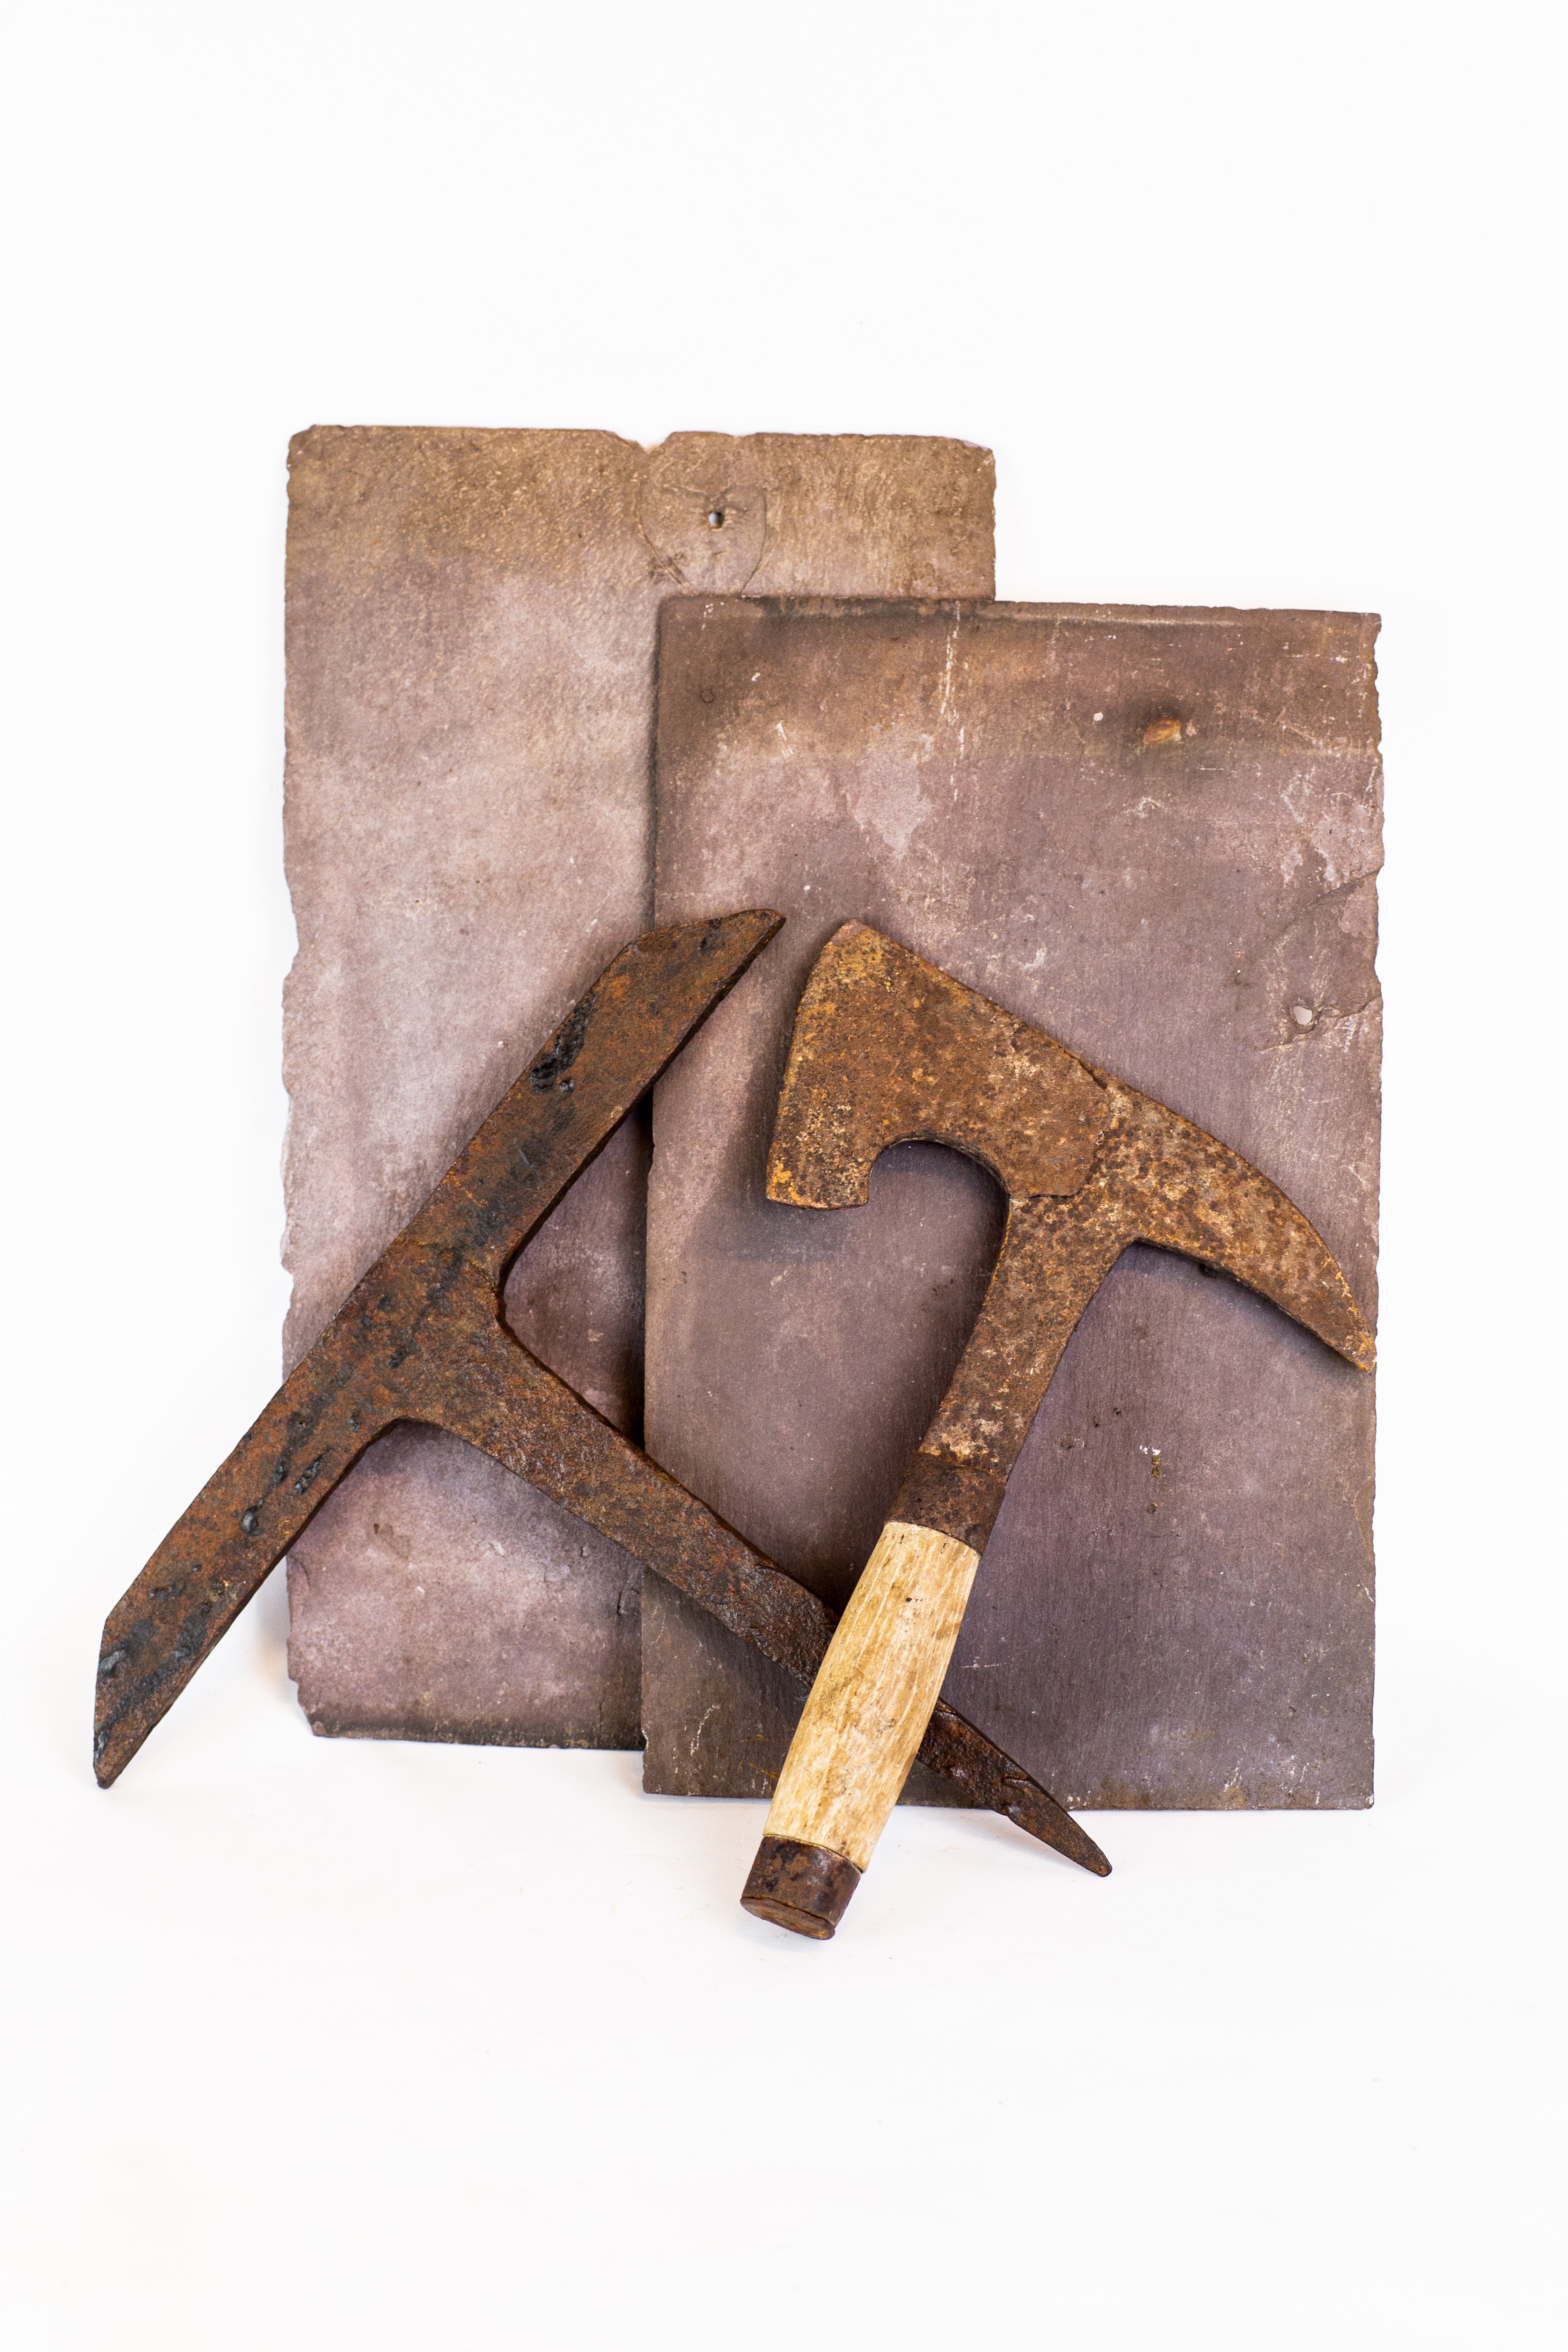 Haubrücke und Hammer für die Herstellung von Schieferplatten (Oderbruch Museum Altranft CC BY-NC-SA)